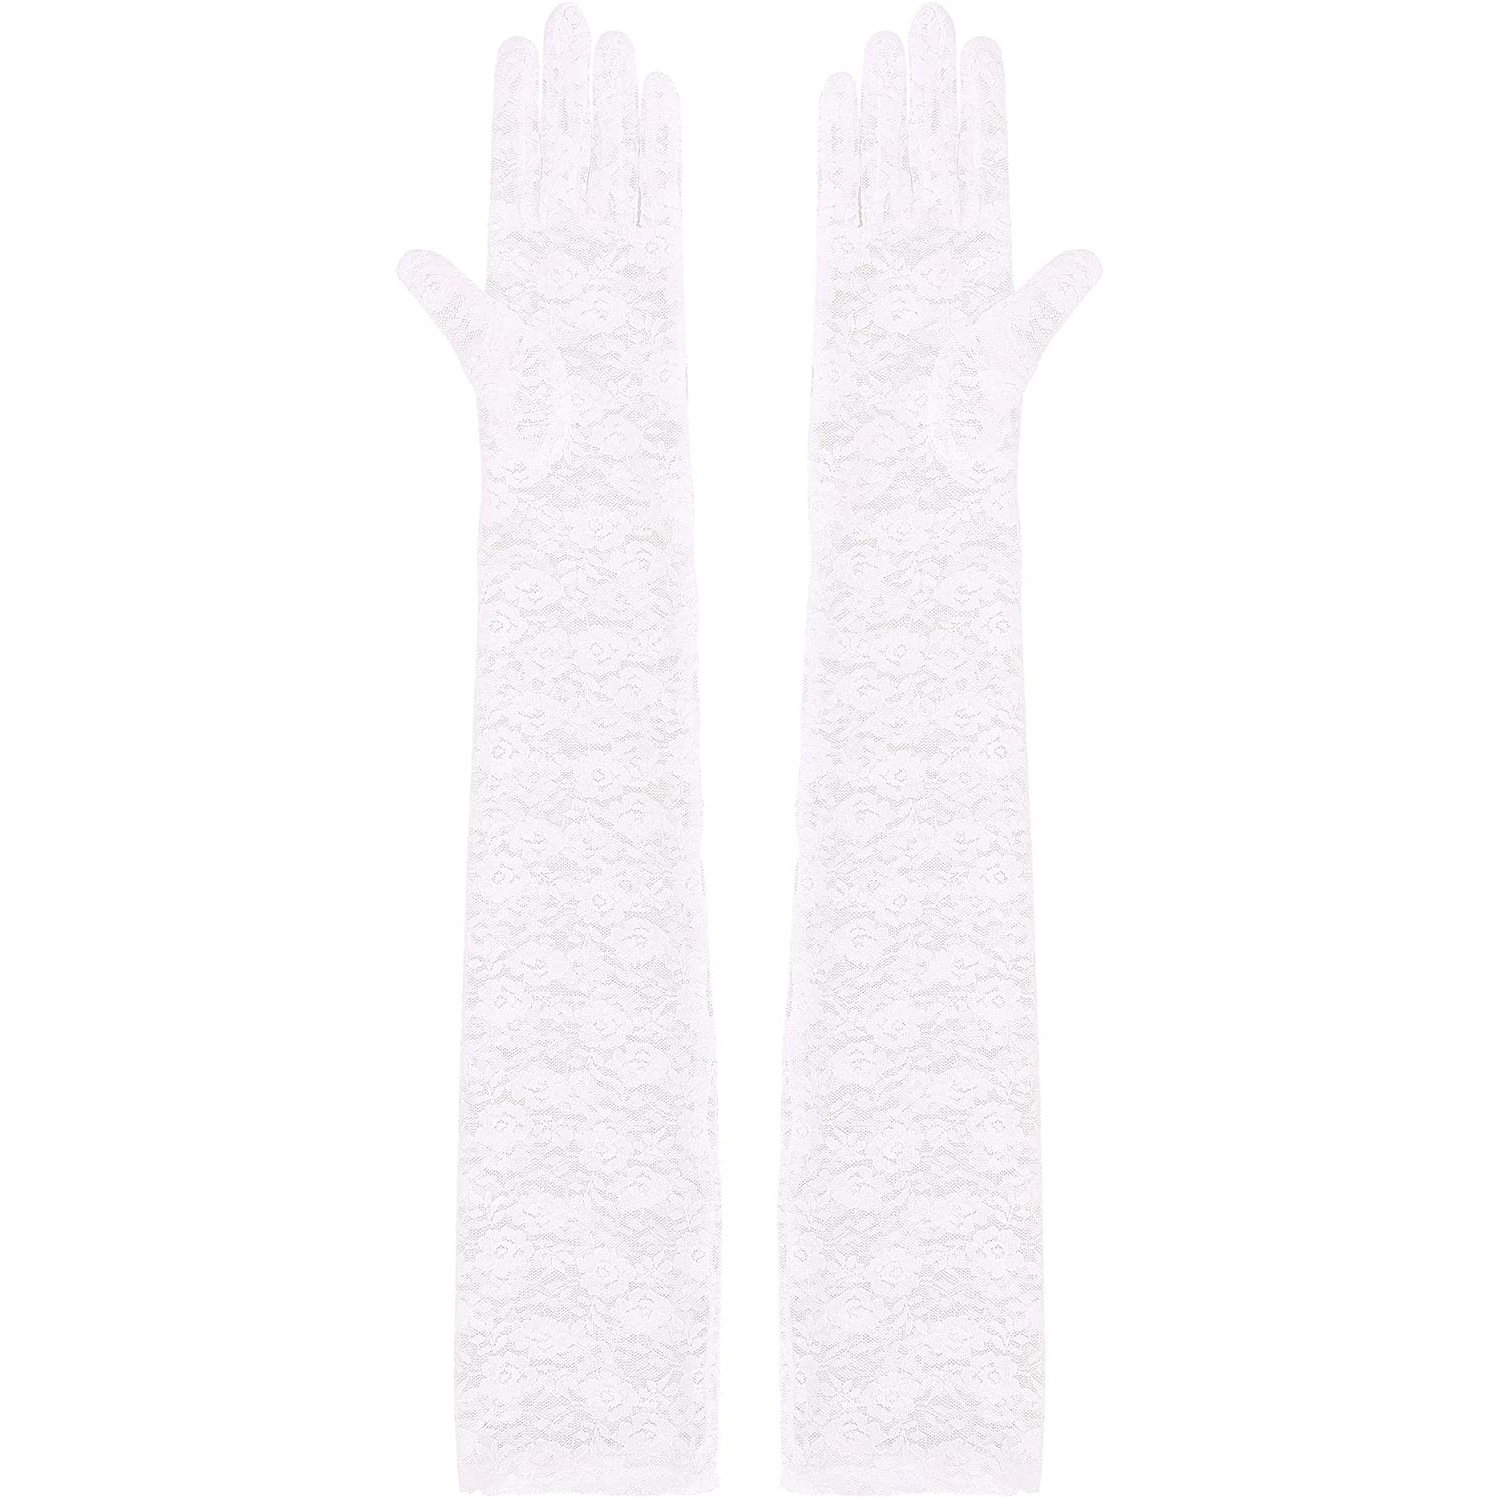 Găng tay nữ dáng dài chất liệu ren, trang trí hoa xinh xắn, đủ 2 màu đen, trắng BT20